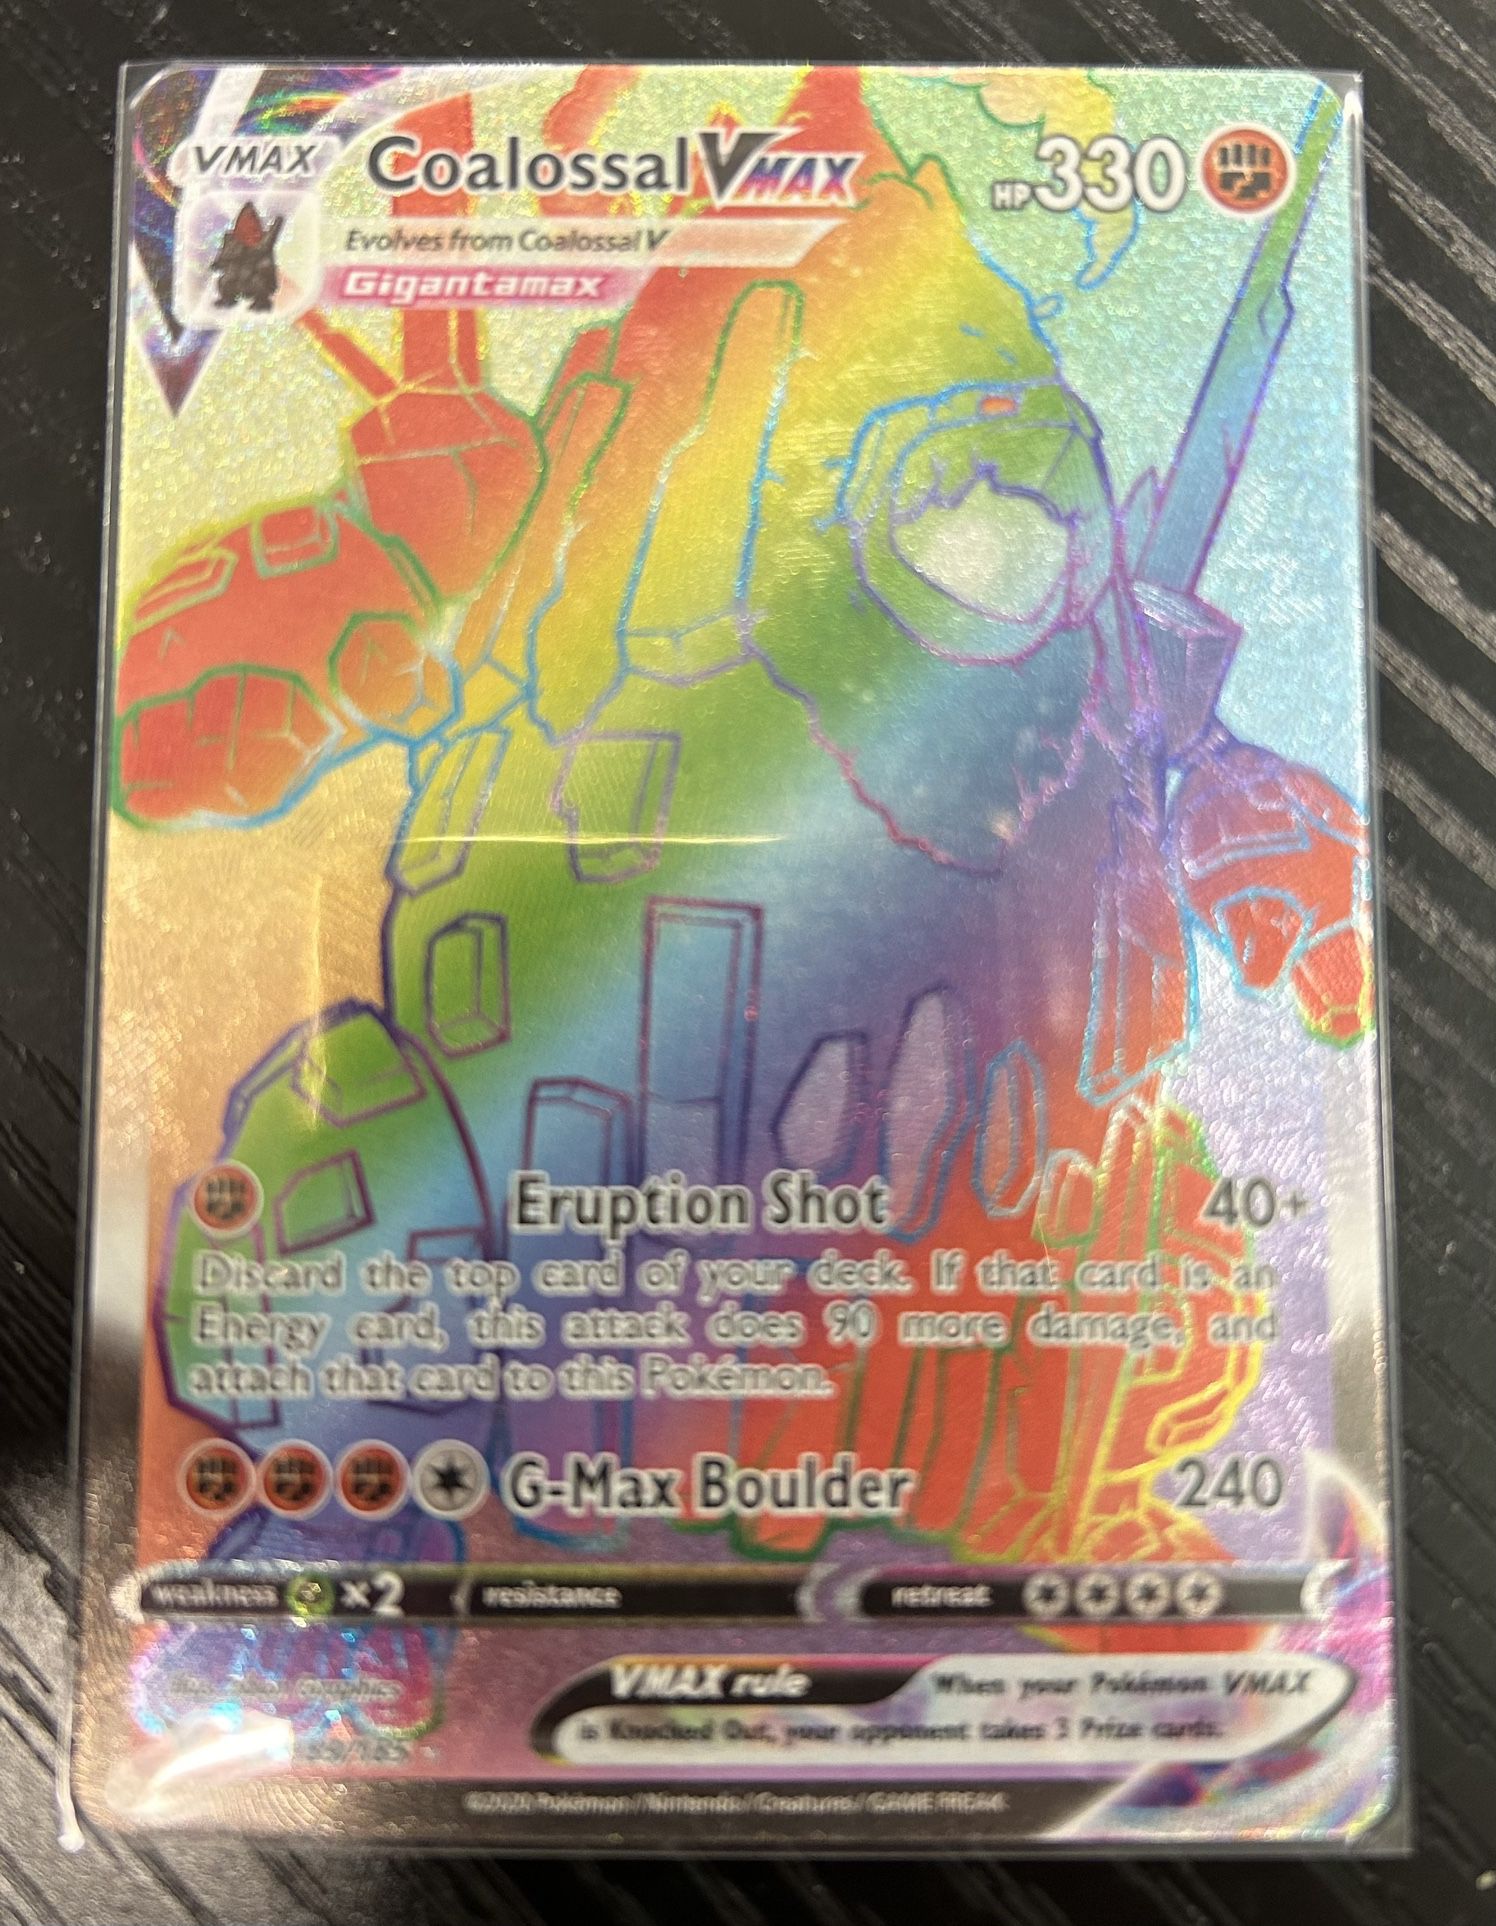 Pokemon Card: "Eruption Shot"